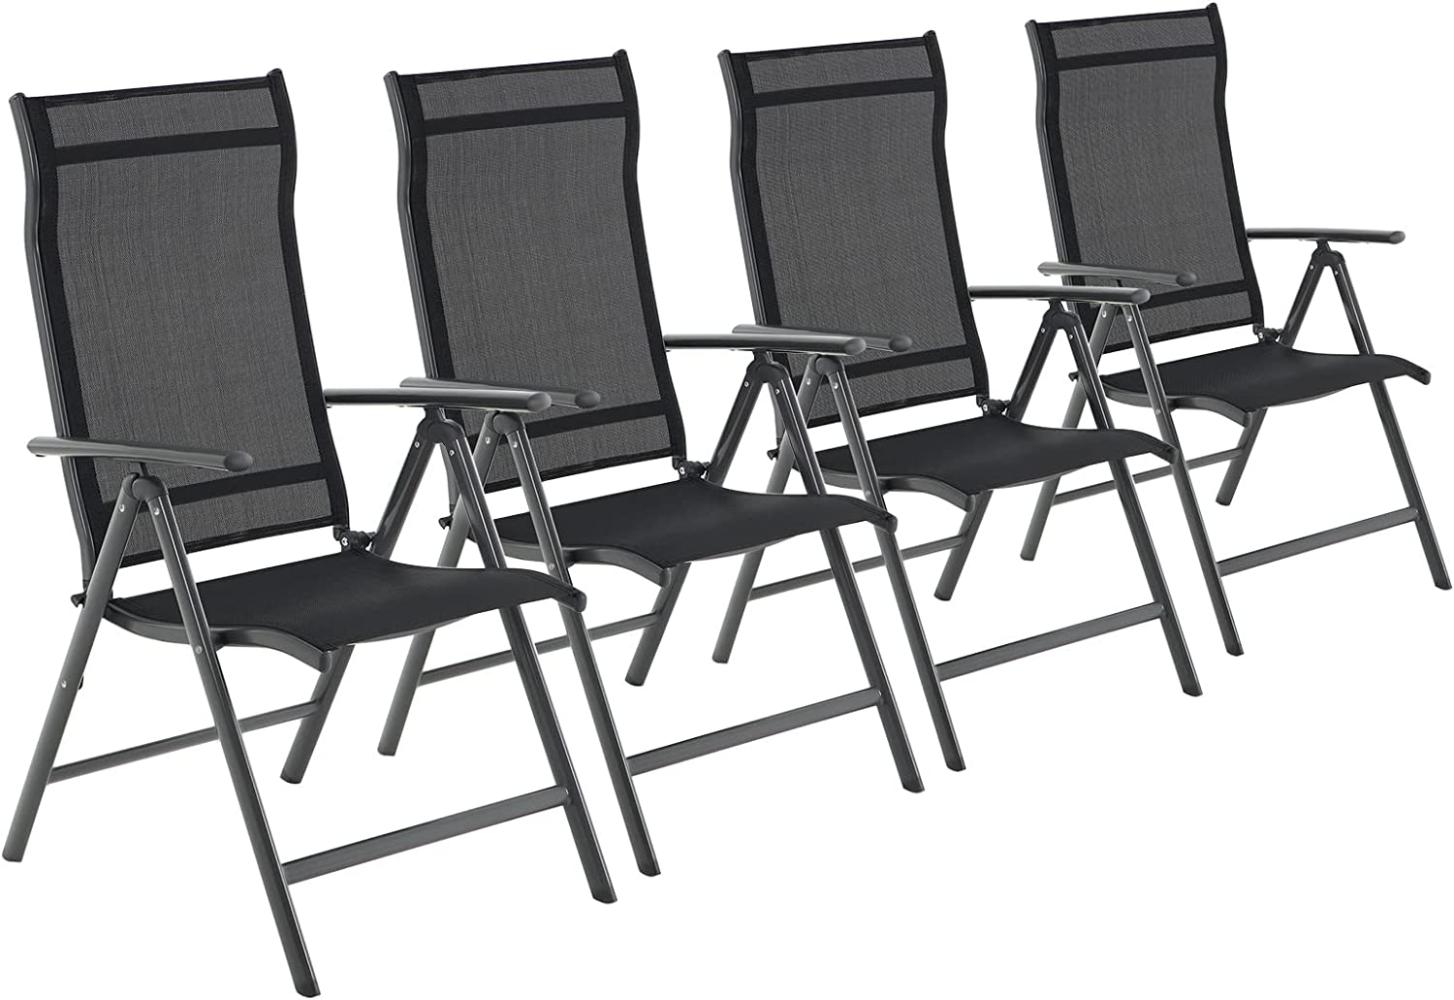 Gartenstühle, 4er Set, Klappstühle, Outdoor-Stühle mit robustem Aluminiumgestell, Rückenlehne 8-stufig verstellbar, bis 150 kg belastbar, schwarz GCB30BK Bild 1